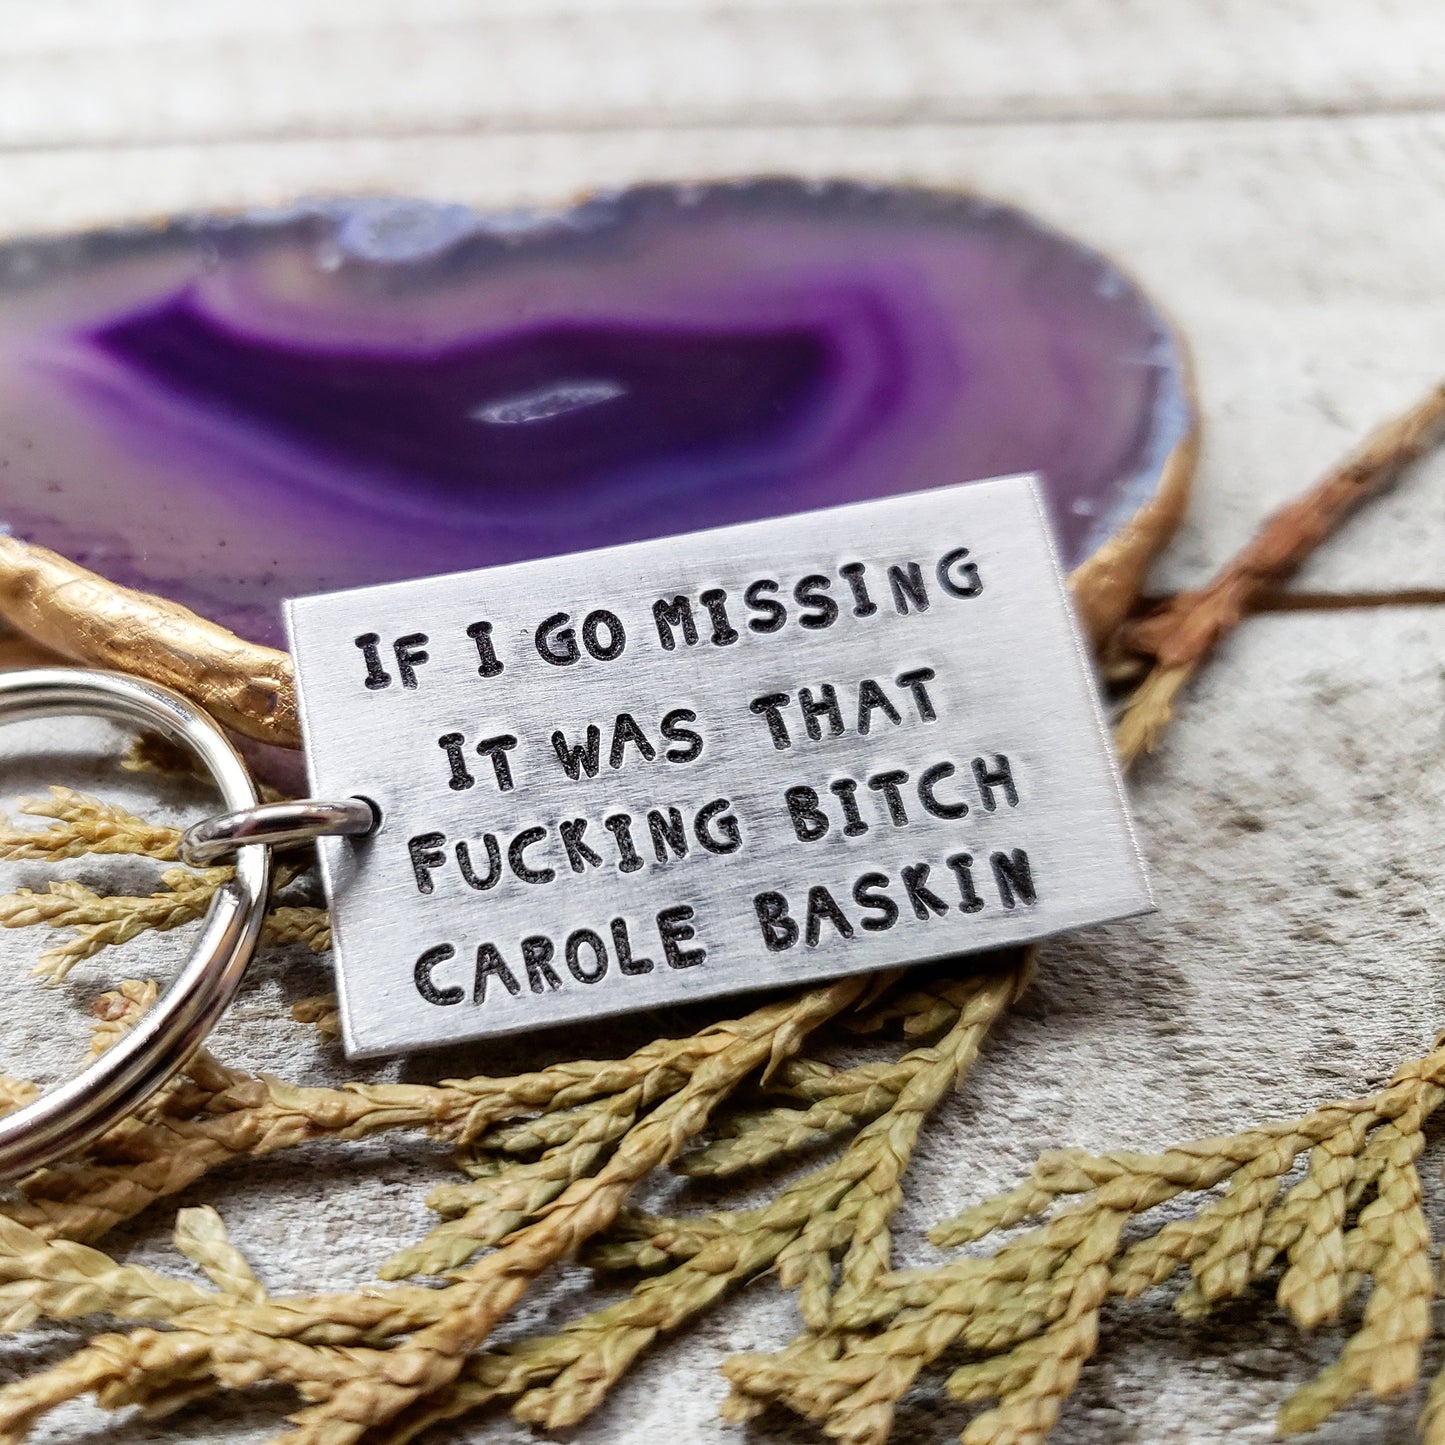 If I go missing Carole baskin keychain